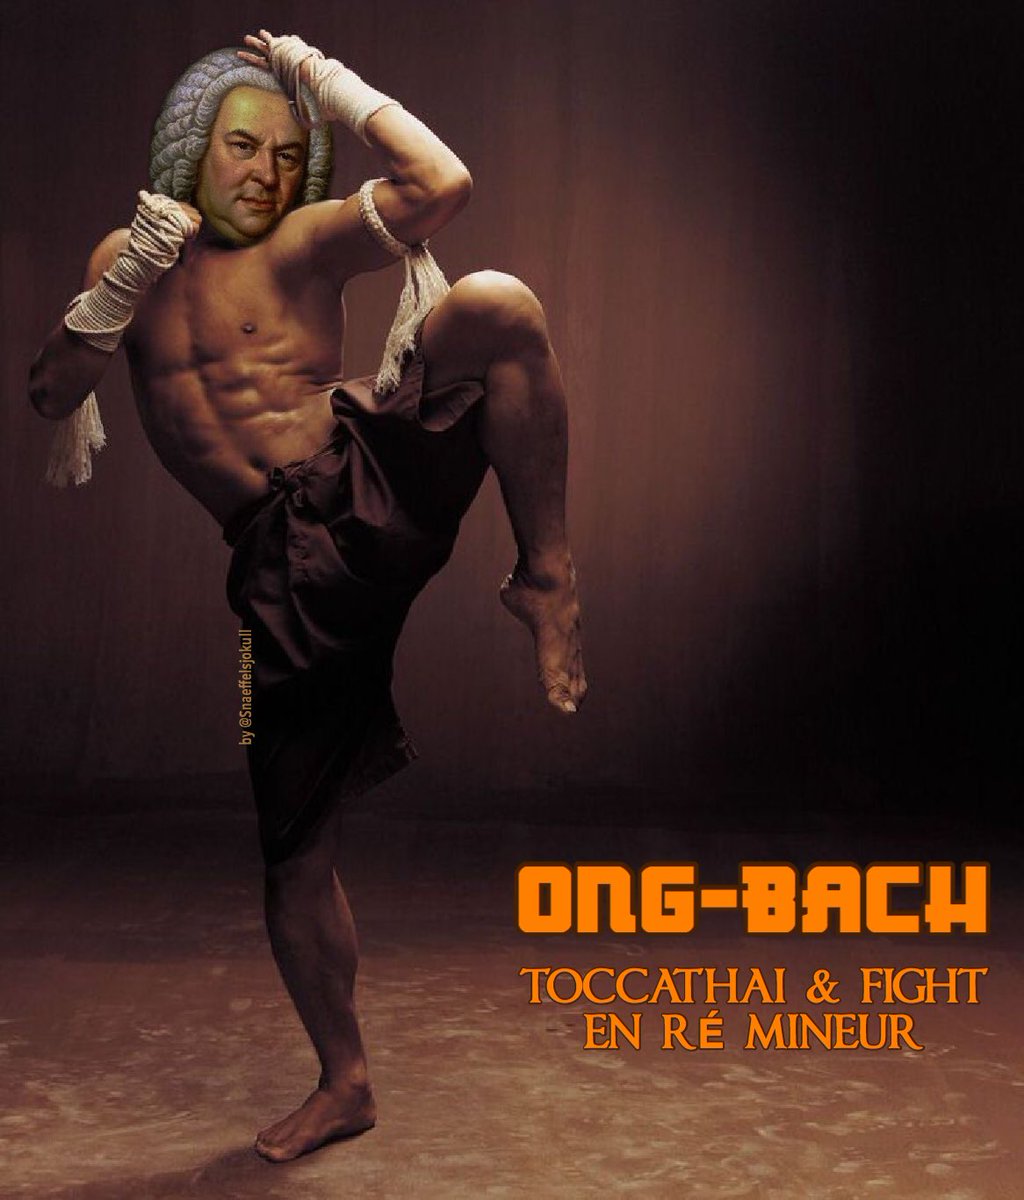 ONG-BACH : Toccathaï & Fight en Ré Mineur

#RetirezMoiPhotoshop #DansTonCulturel #Bach #OngBak #TonyJaa #Thailand